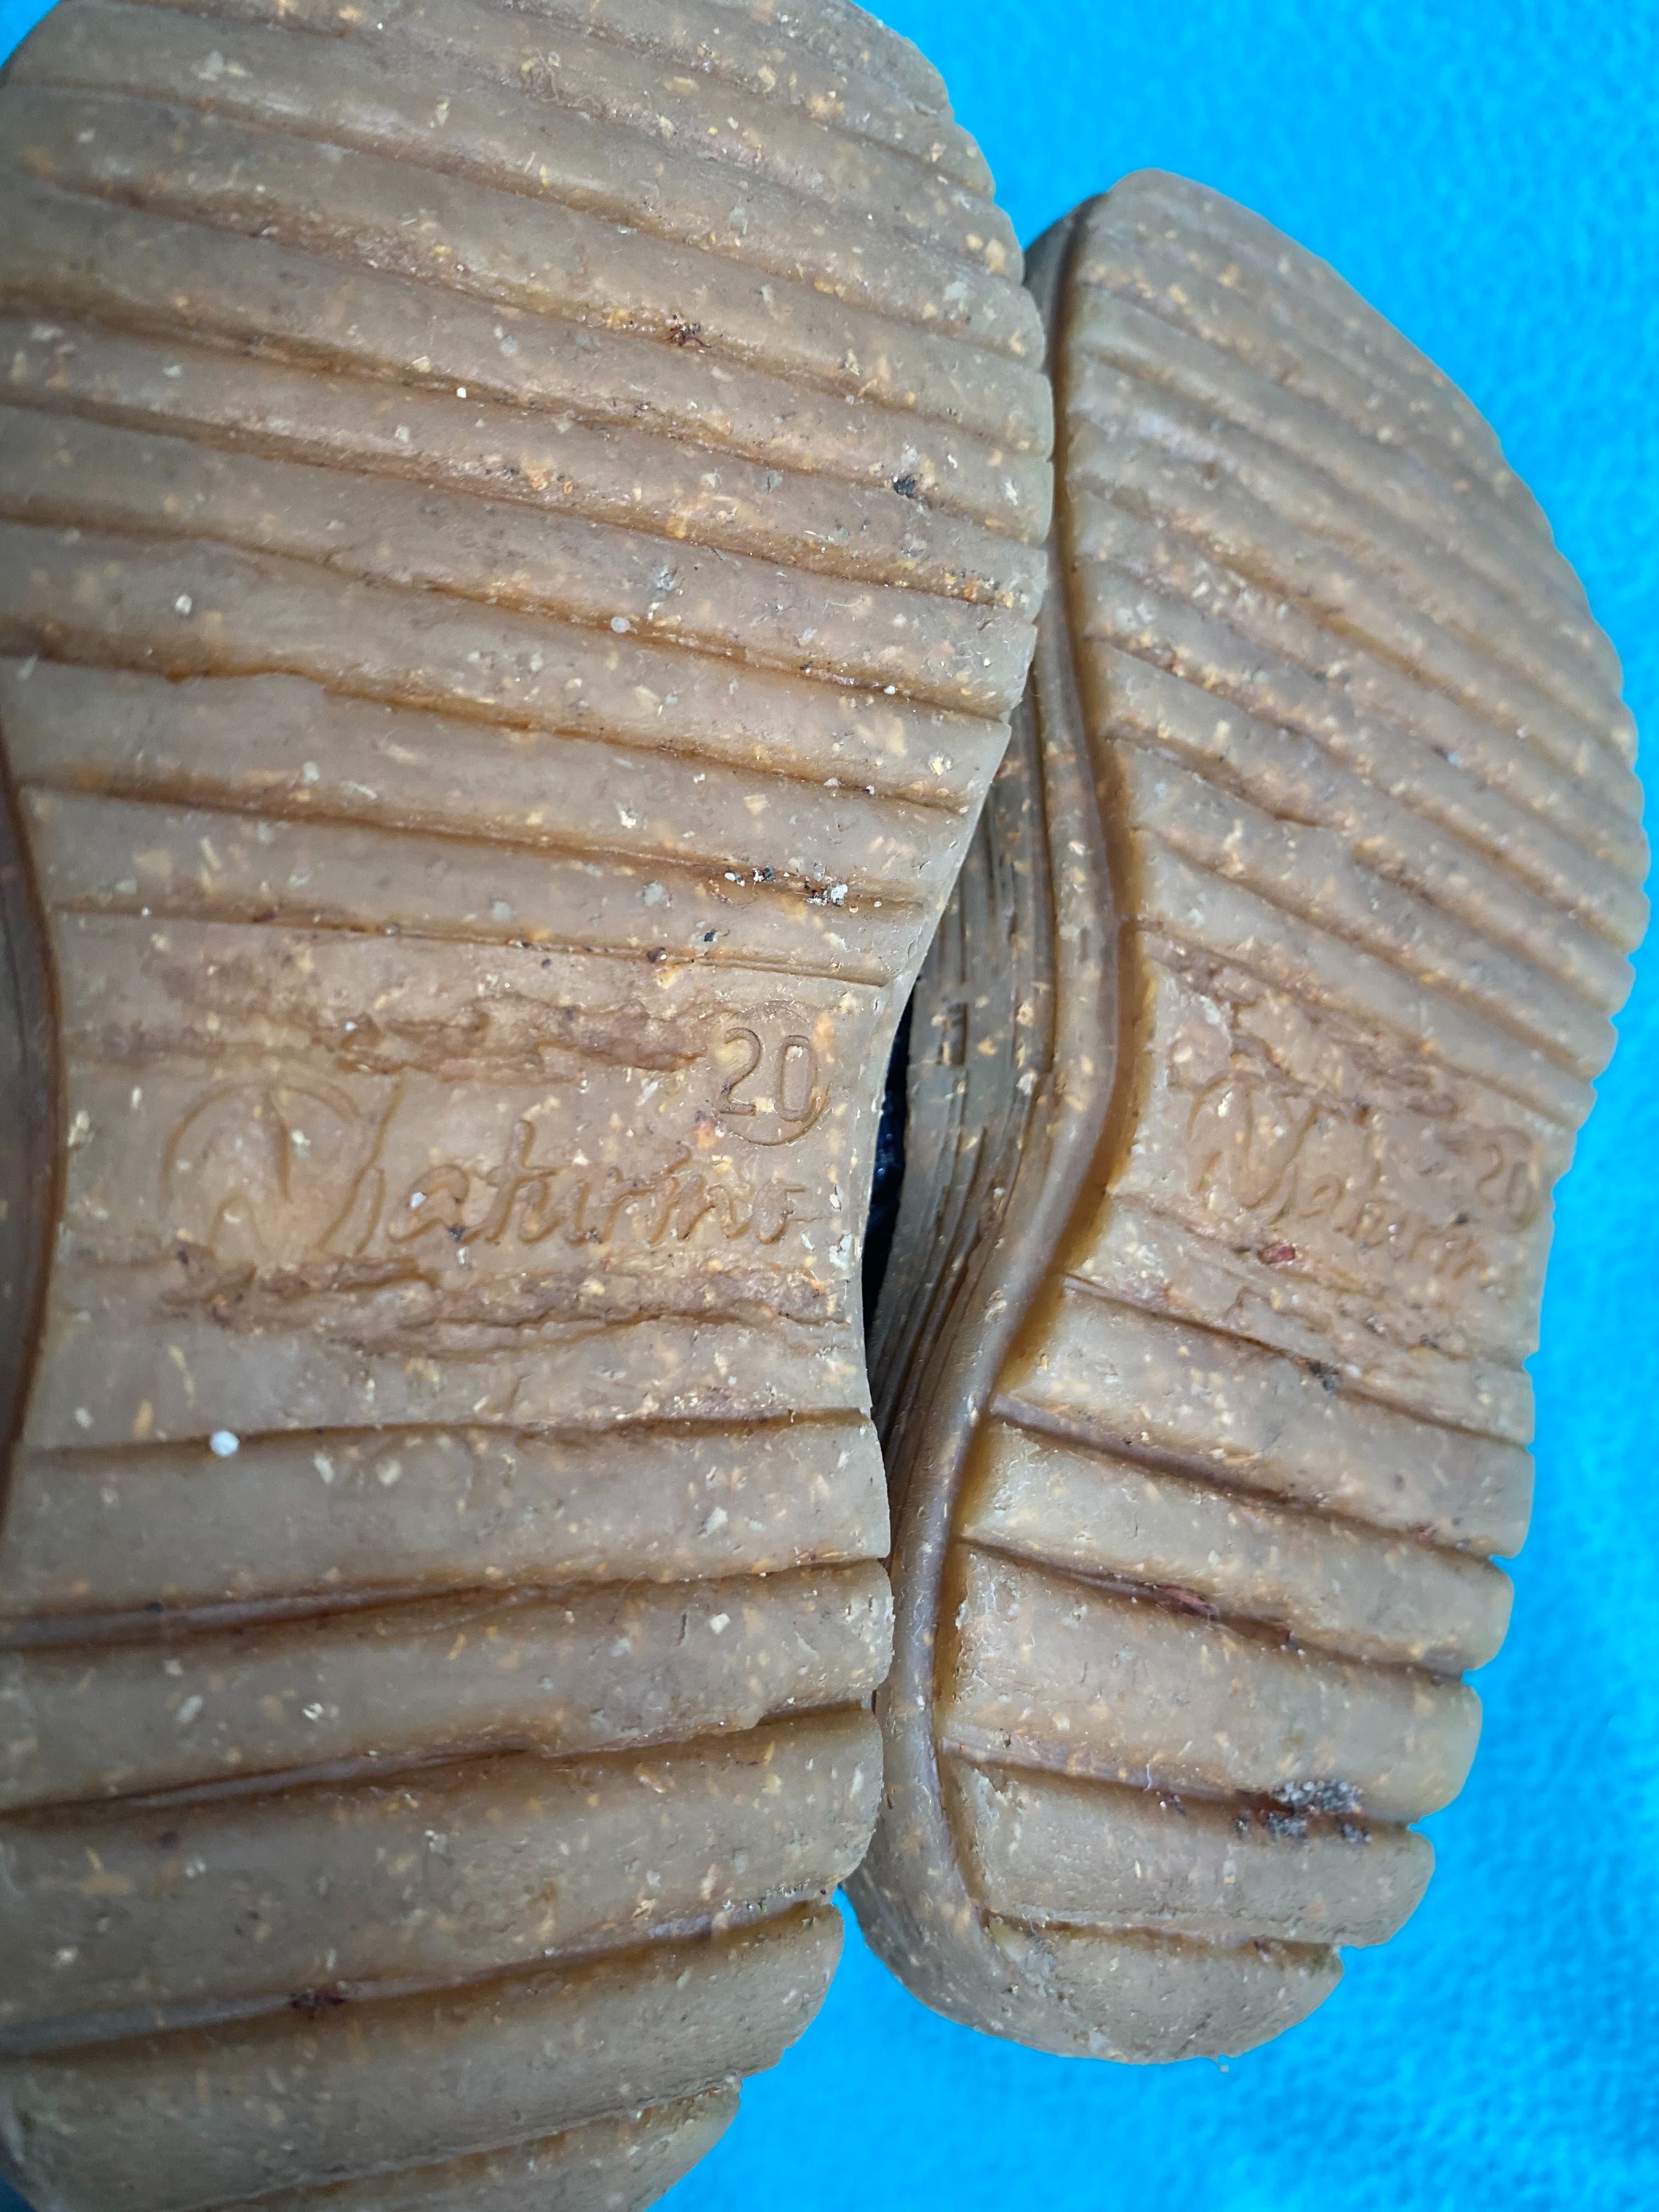 Granatowe botki buty Naturino wygodne porządne skórzane 20